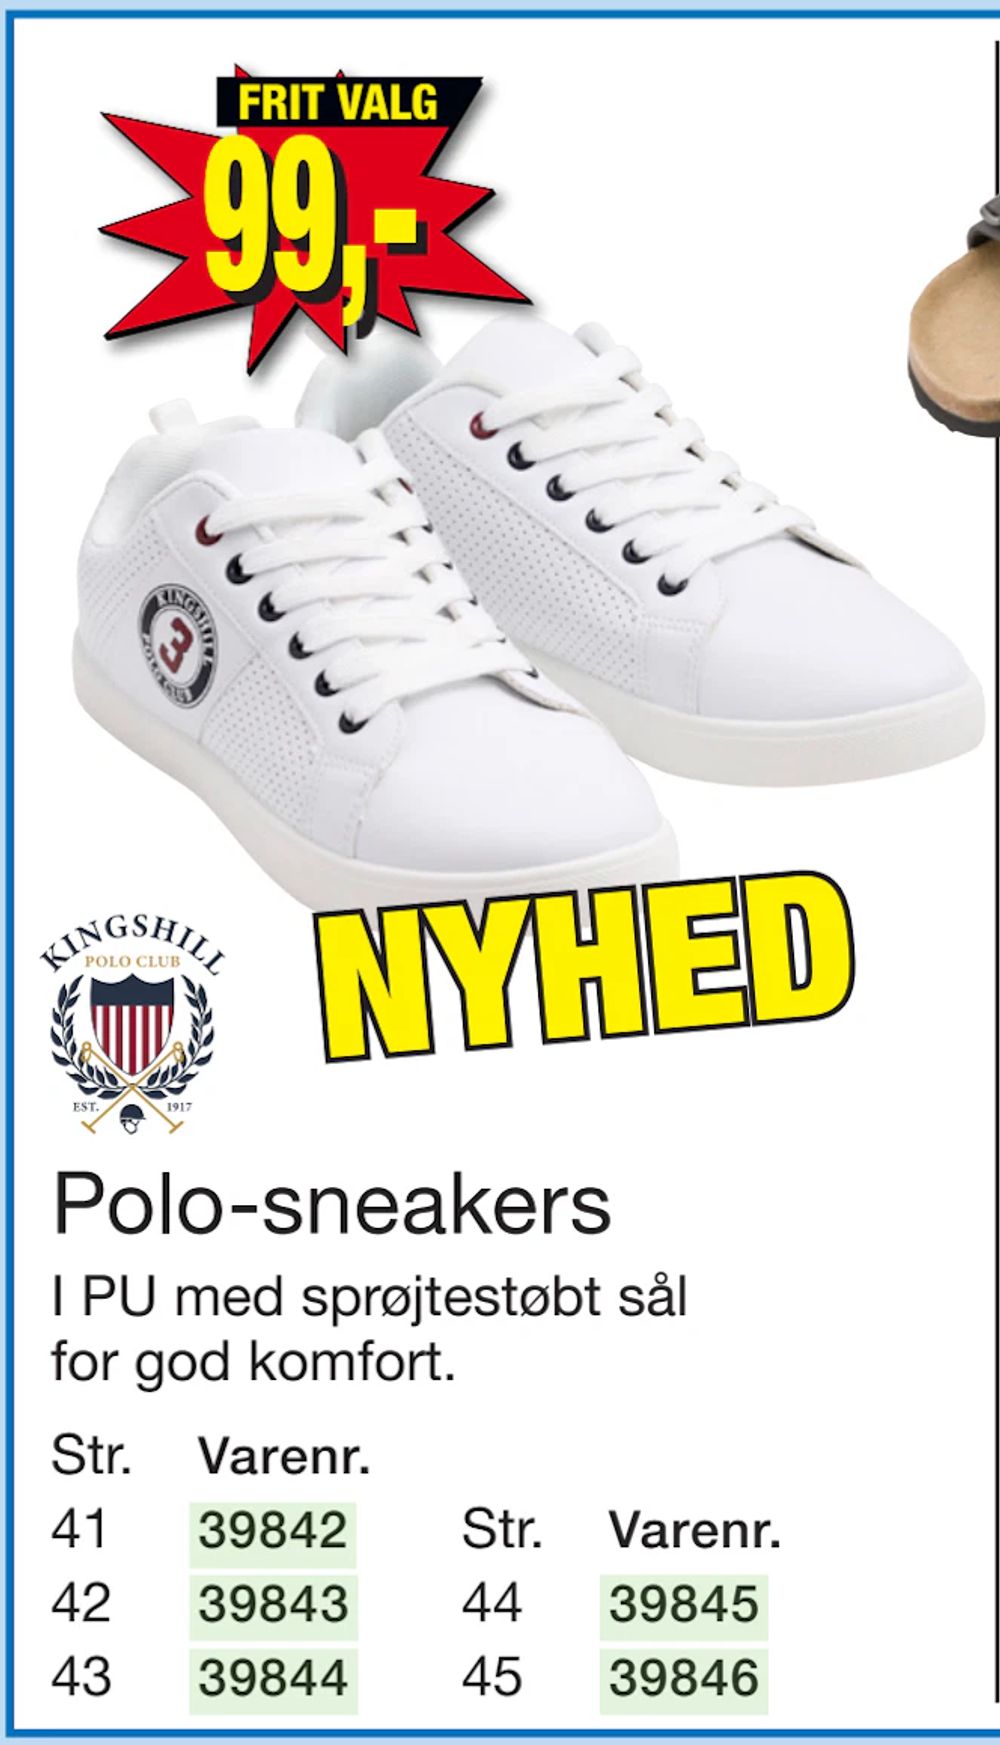 Tilbud på Polo-sneakers fra Harald Nyborg til 99 kr.